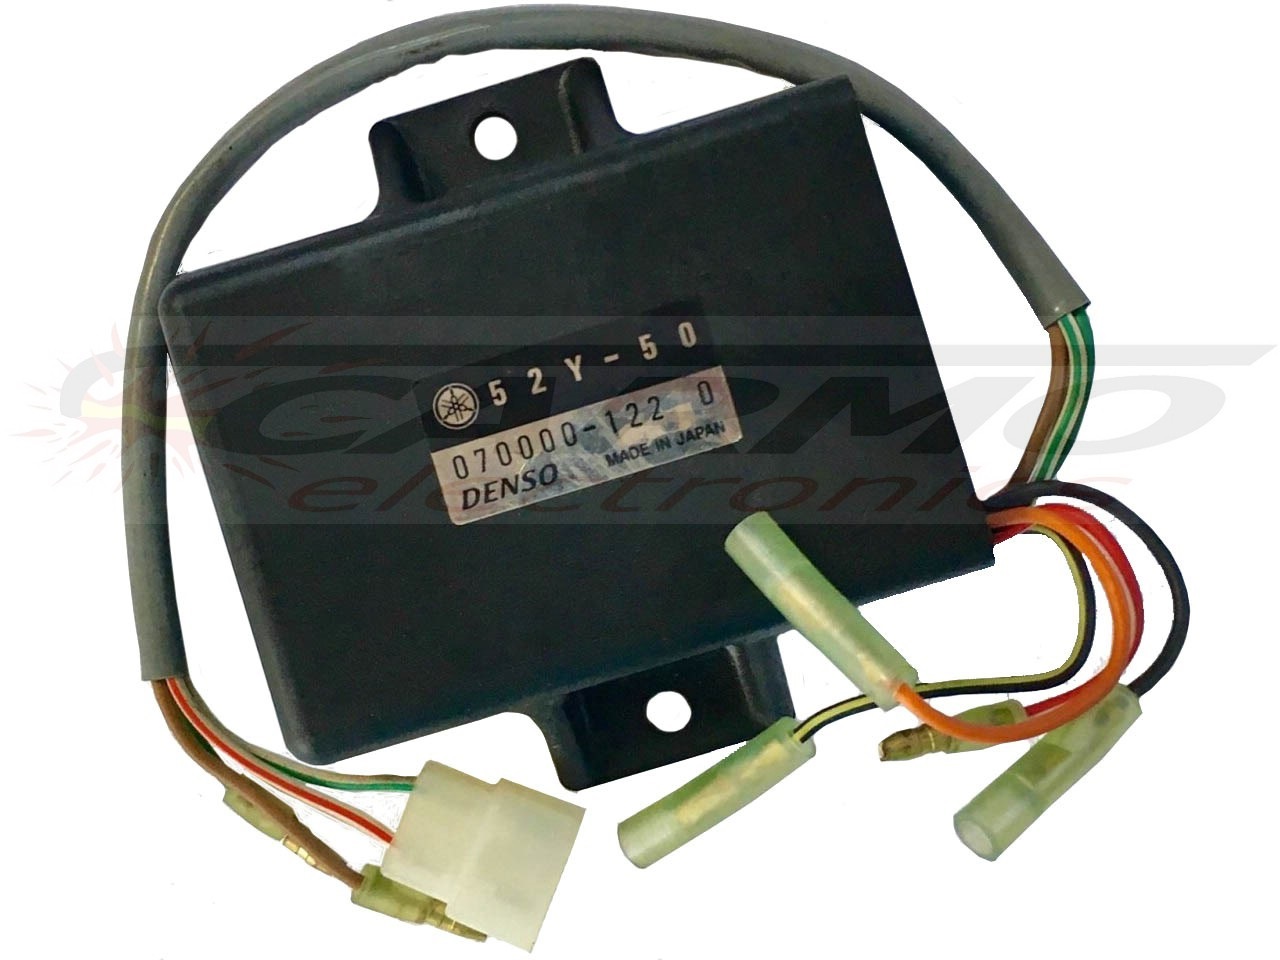 RD350 CDI dispositif de commande boîte noire (52Y-50, 070000-122 0)